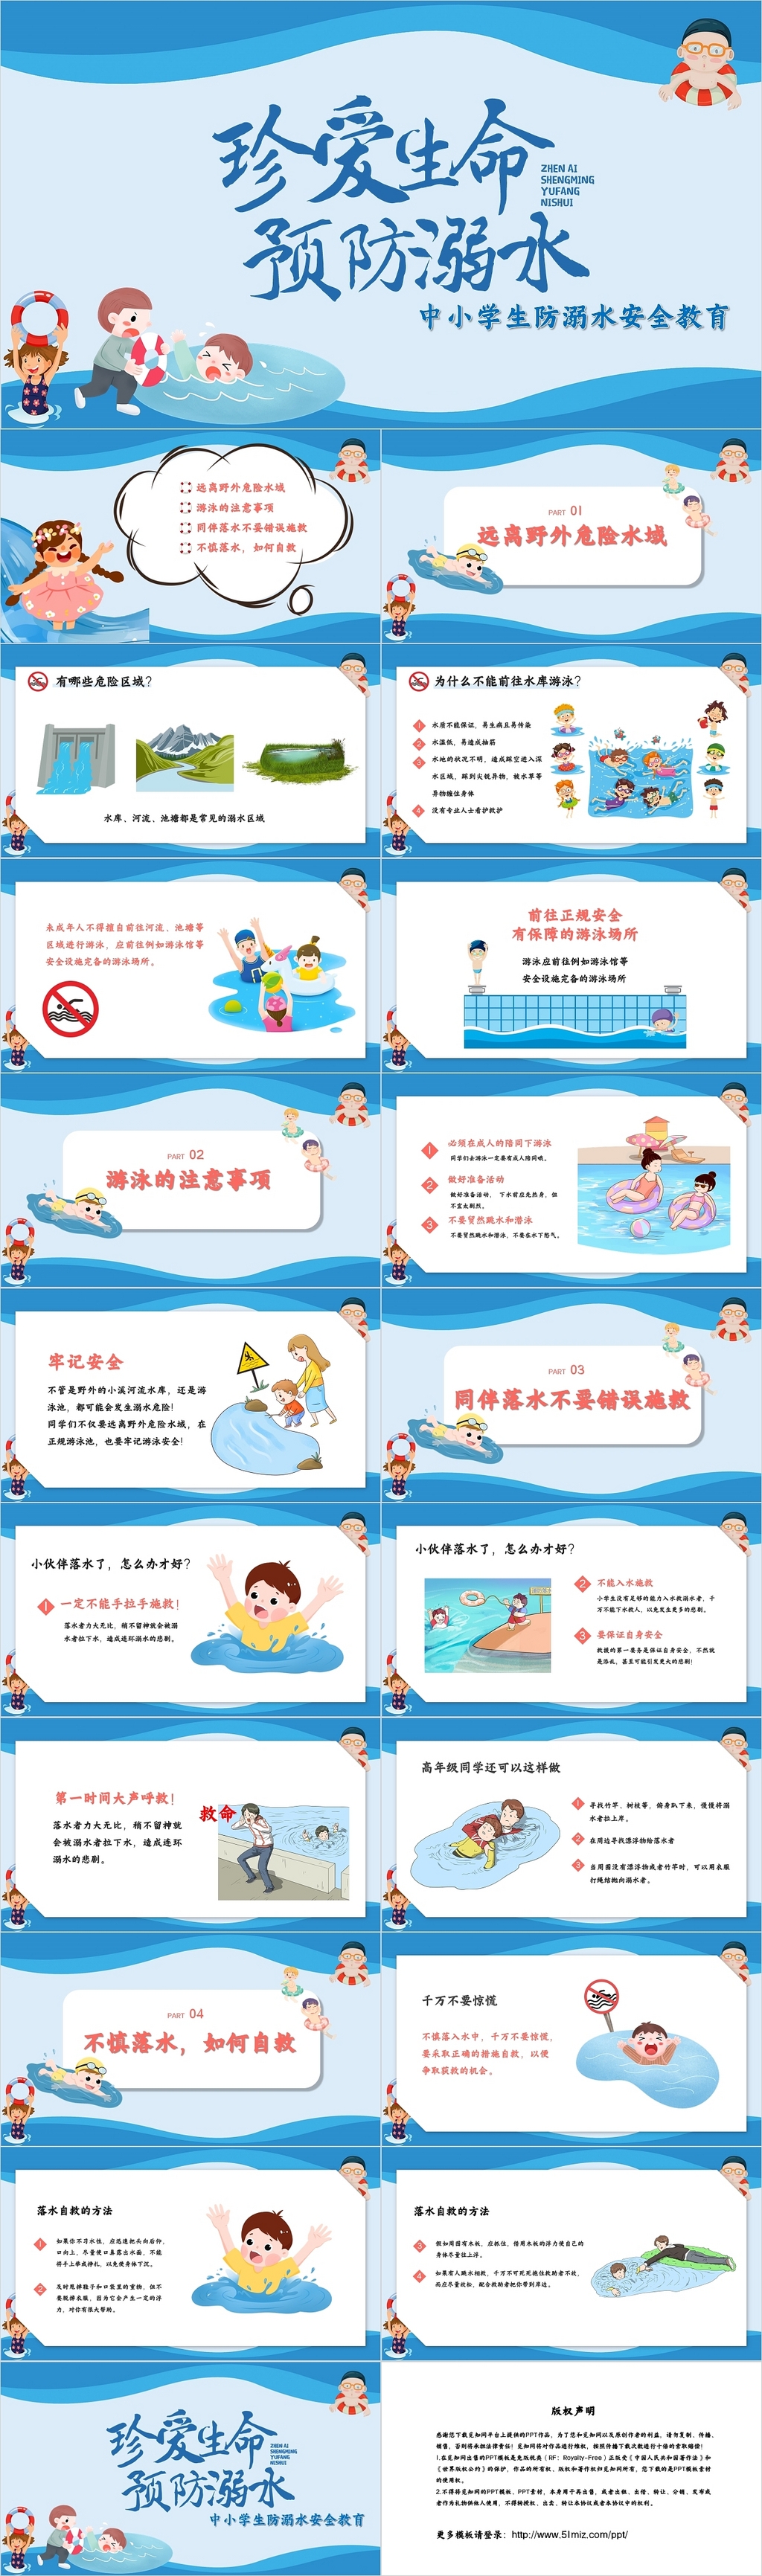 蓝色卡通人物可爱学生儿童防溺水安全教育PPT模板珍爱生命预防溺水